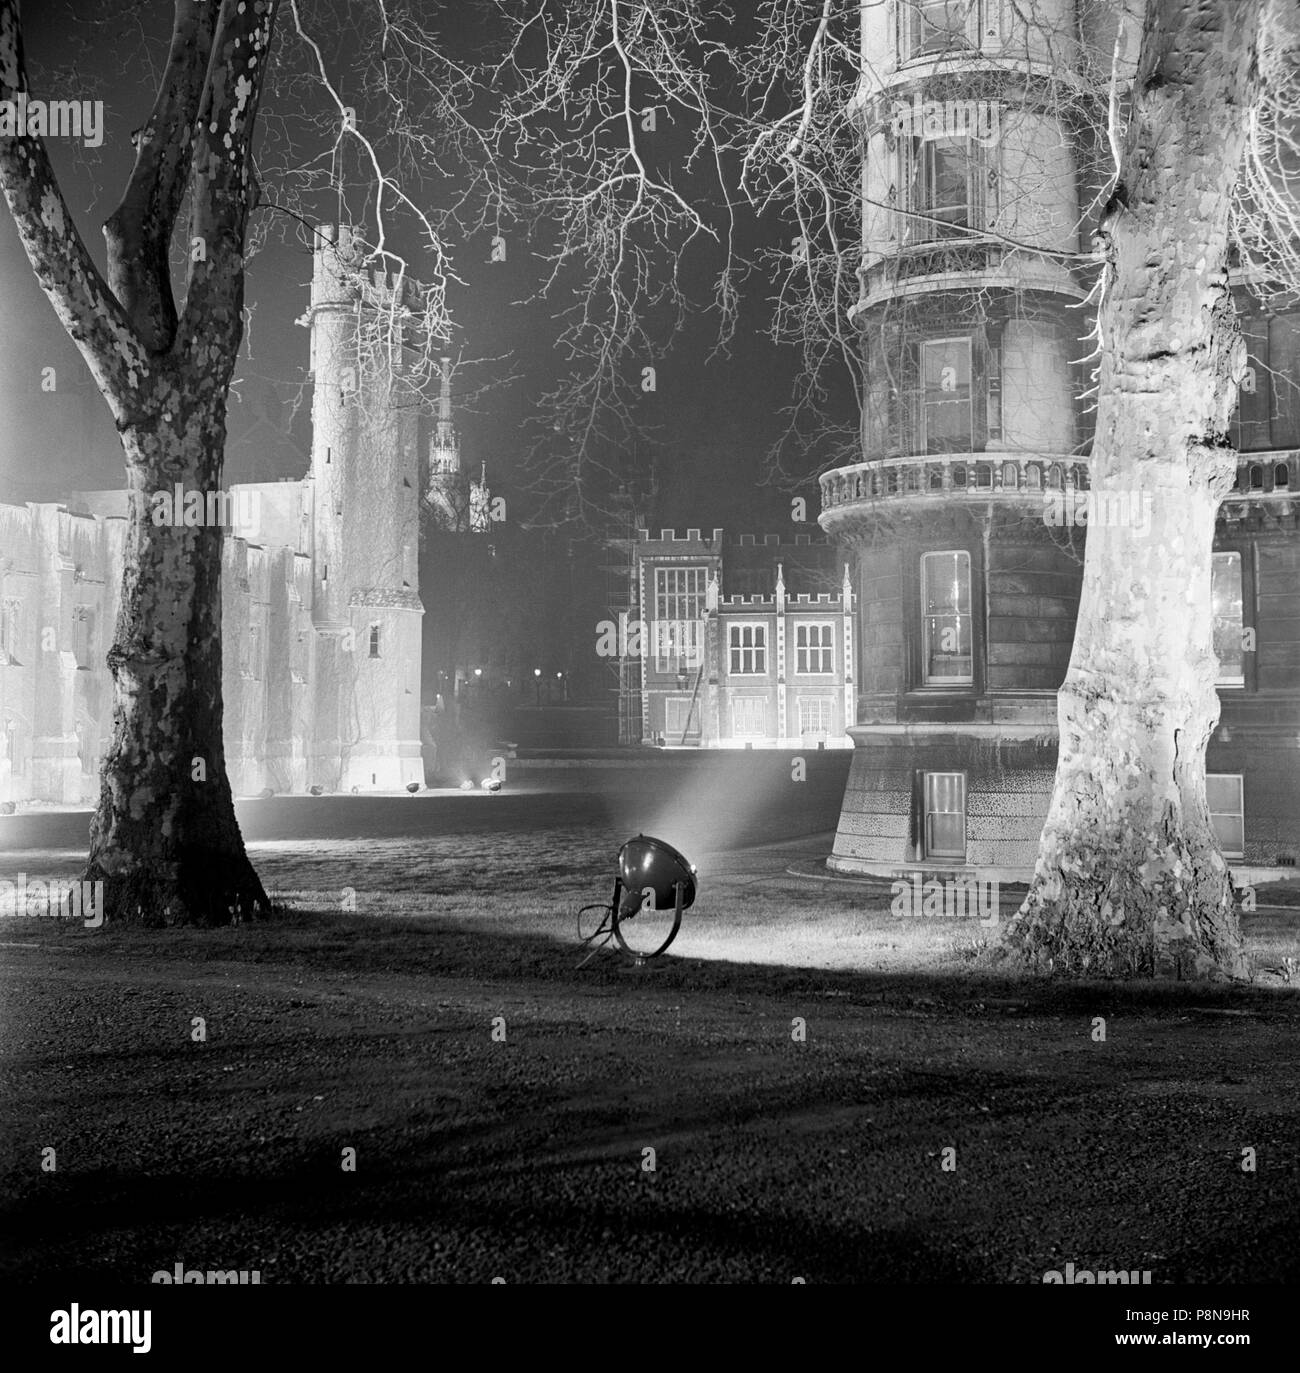 Temple Gardens, City of London, c1945-c1980. Artist: Eric de Maré. Stock Photo